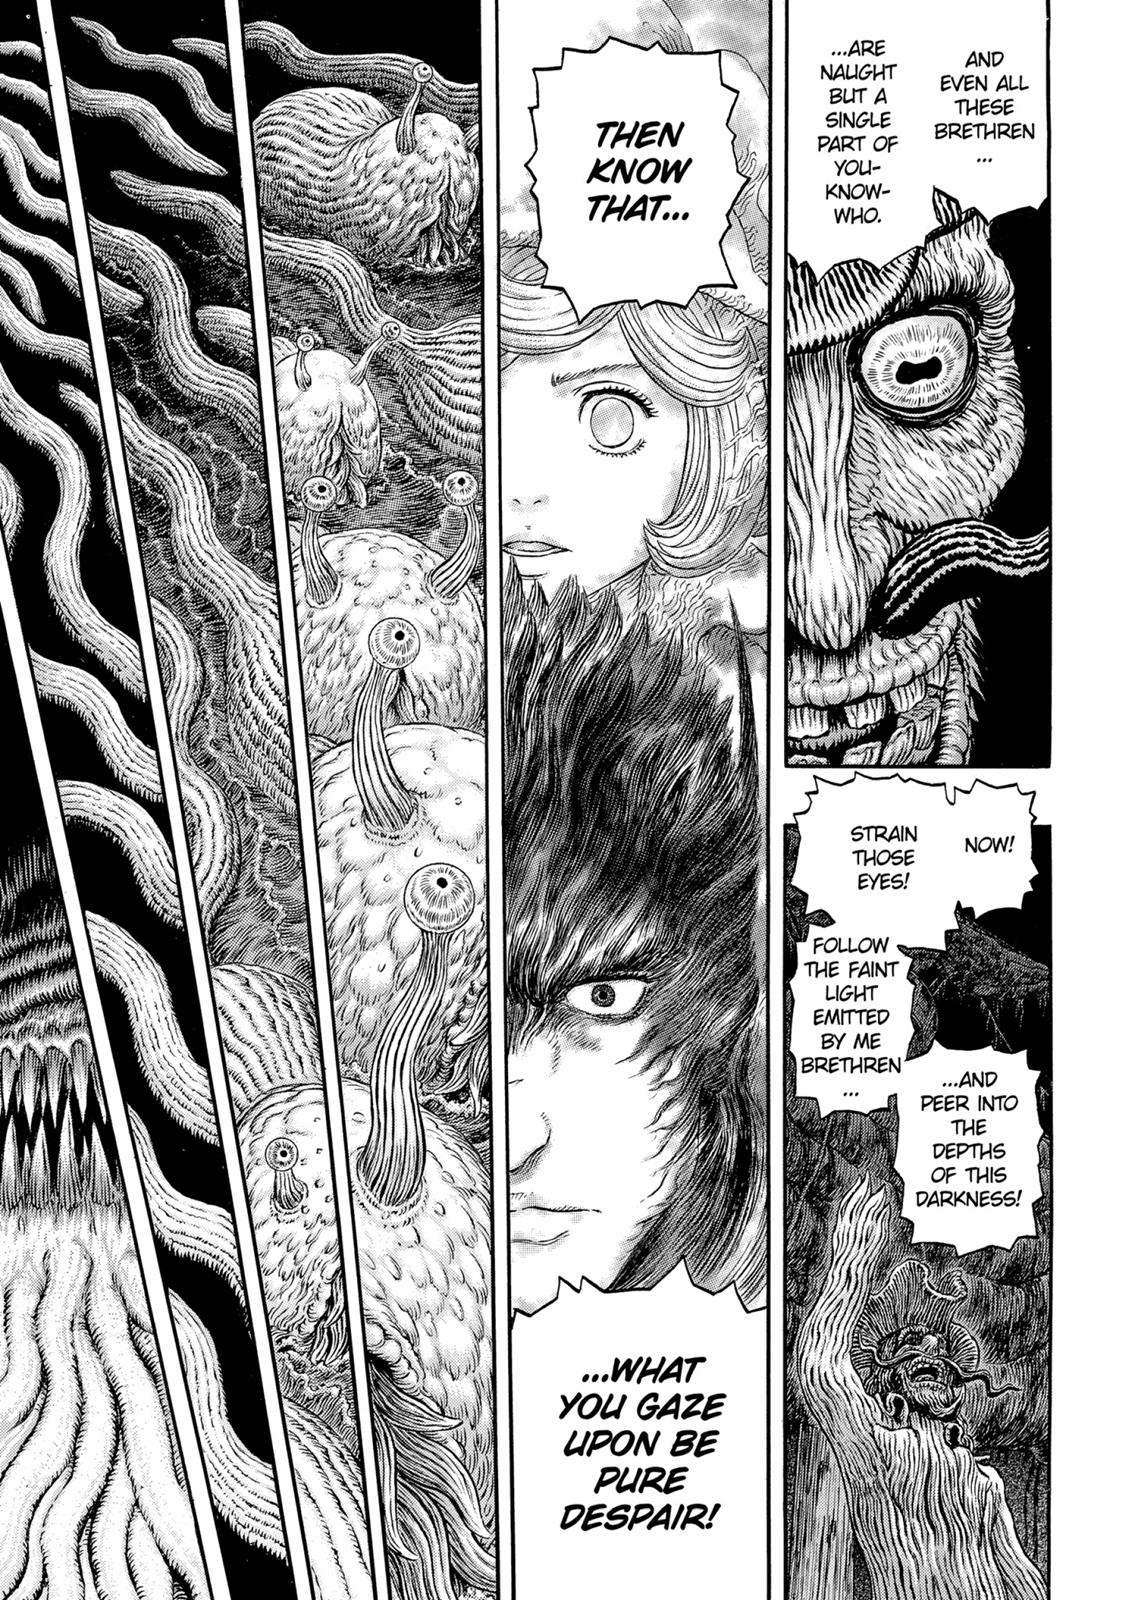 Berserk Manga Chapter 319 image 07